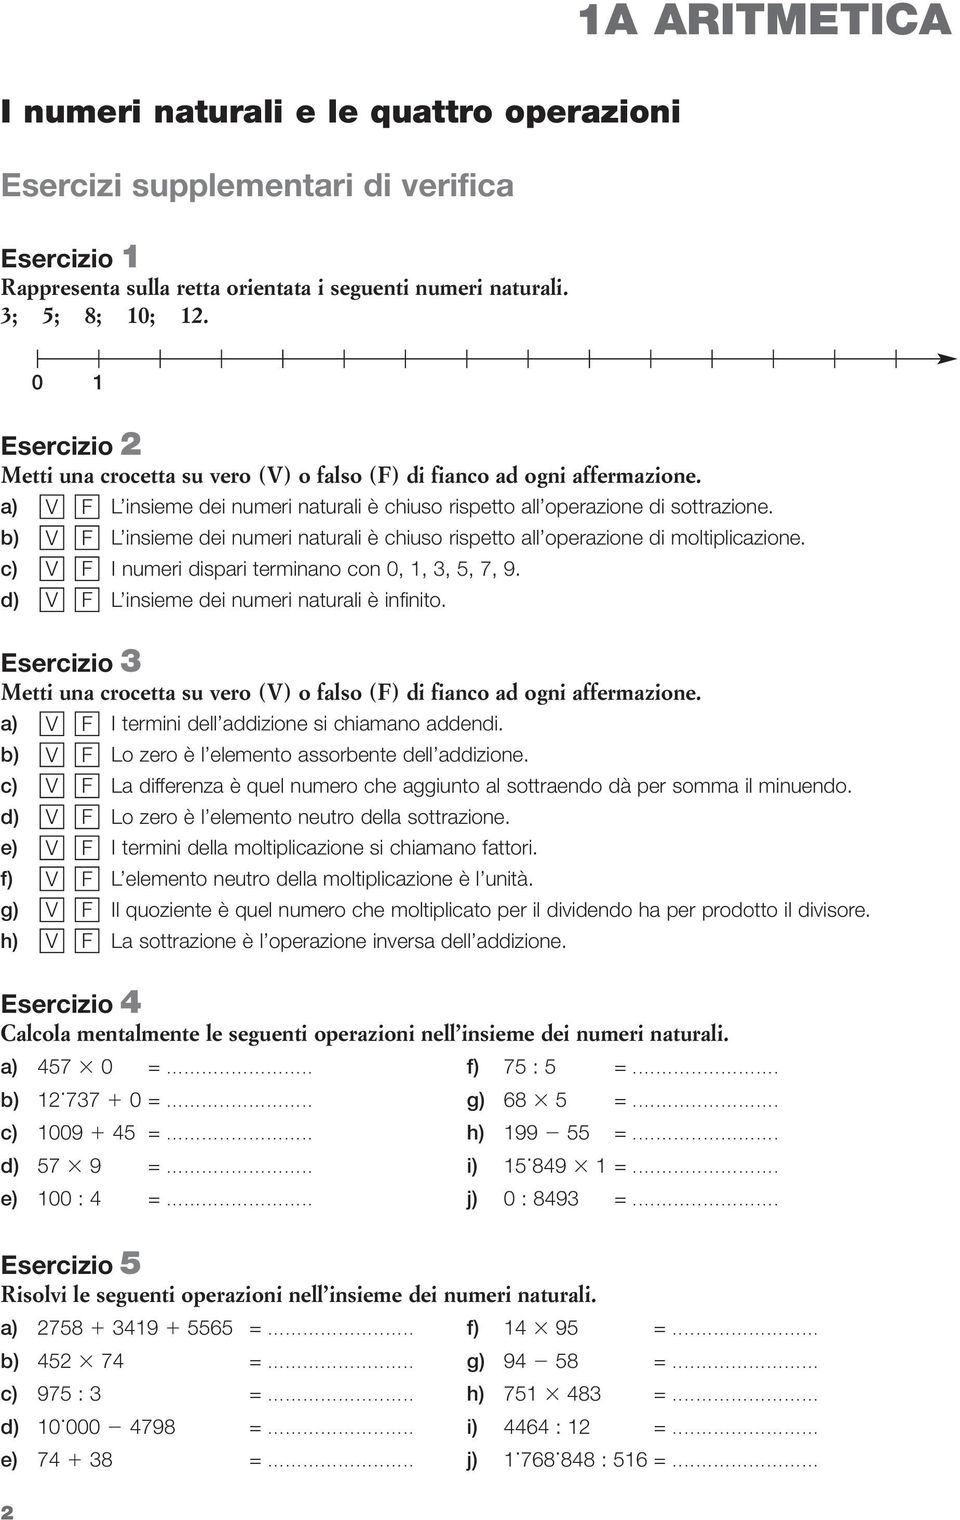 1a Aritmetica I Numeri Naturali E Le Quattro Operazioni Esercizi Supplementari Di Verifica Pdf Free Download